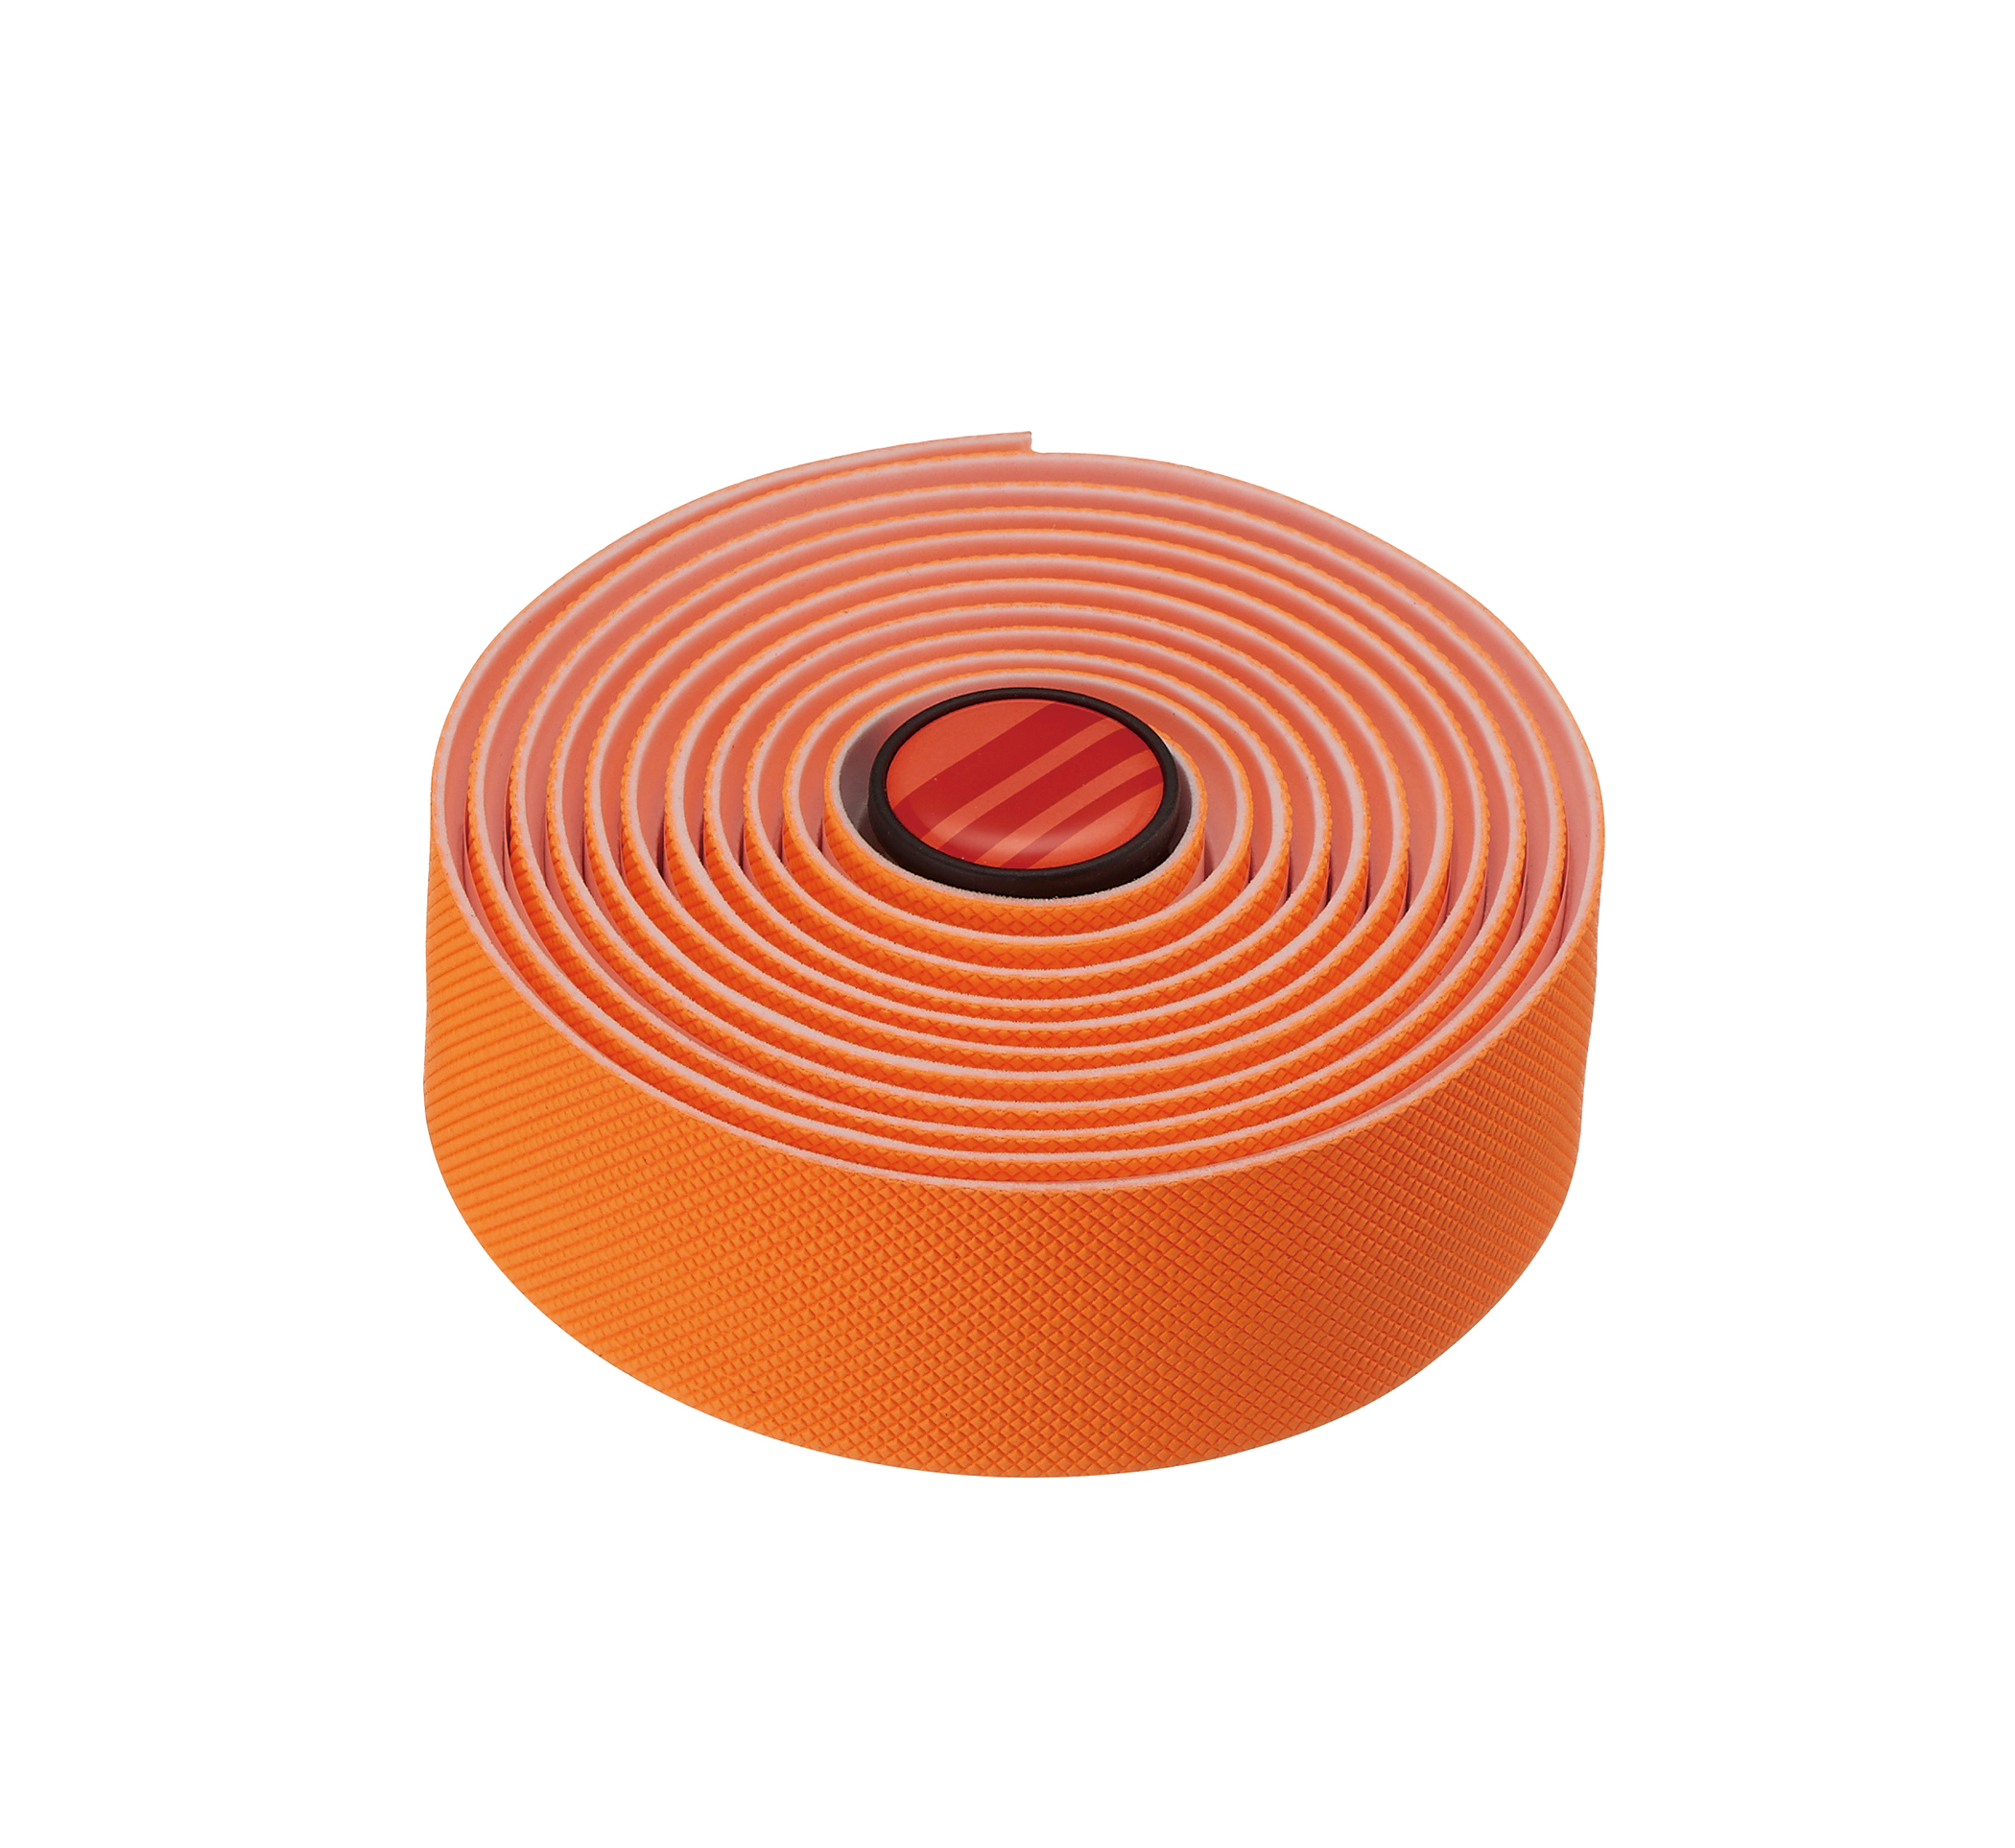 Обмотка руля FSA POWERTOUCH, вспененая резина, оранжевая